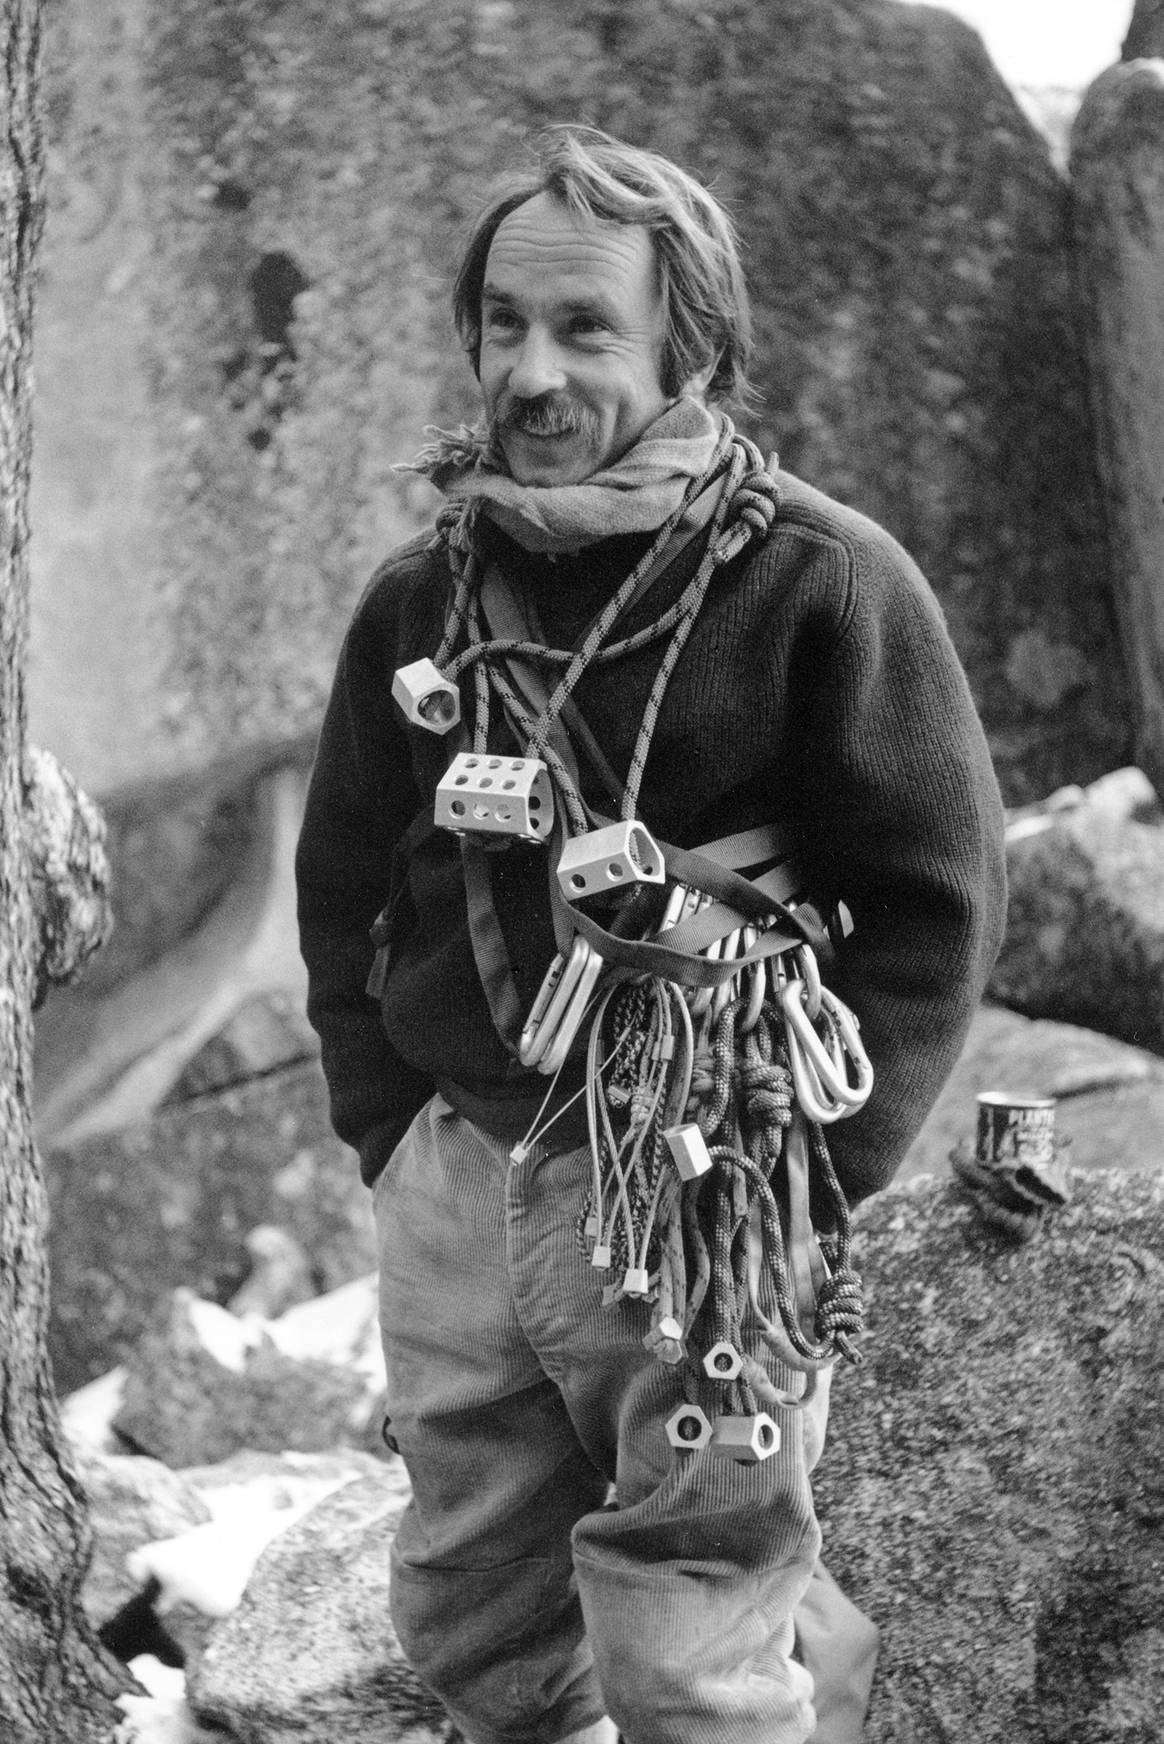 Patagonia-Gründer Yvon Chouinard in jüngeren Jahren. Bild: Tom Frost via Patagonia